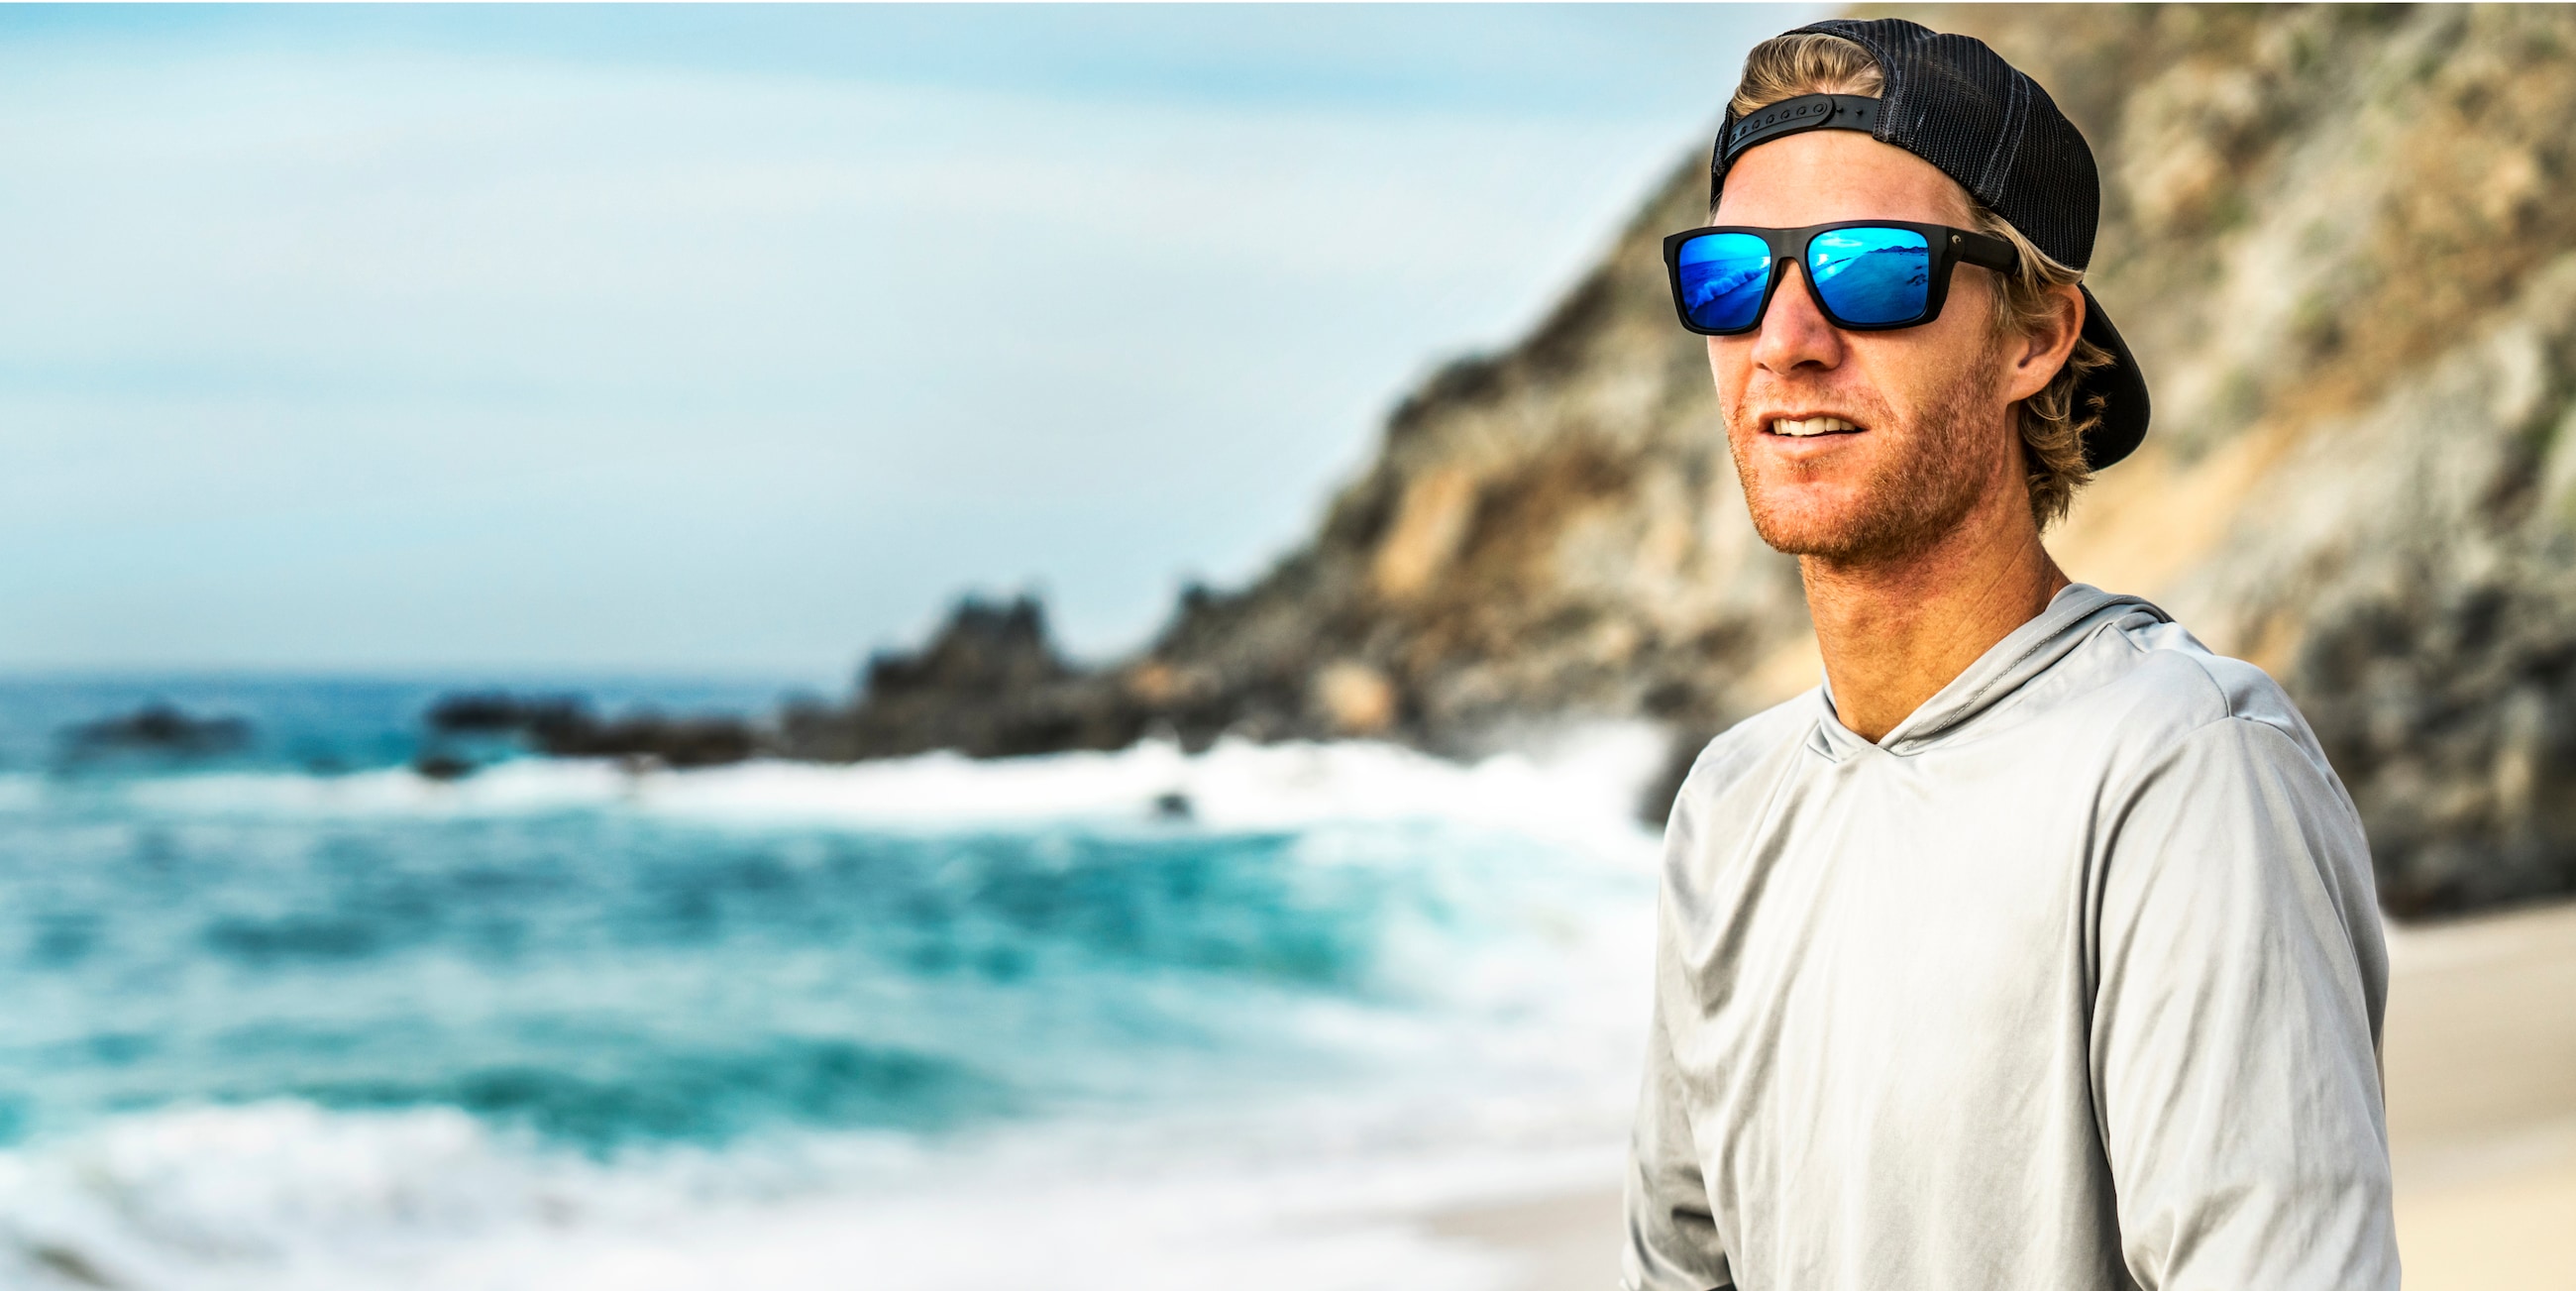 Lido Polarized Sunglasses in Gray | Costa Del Mar®